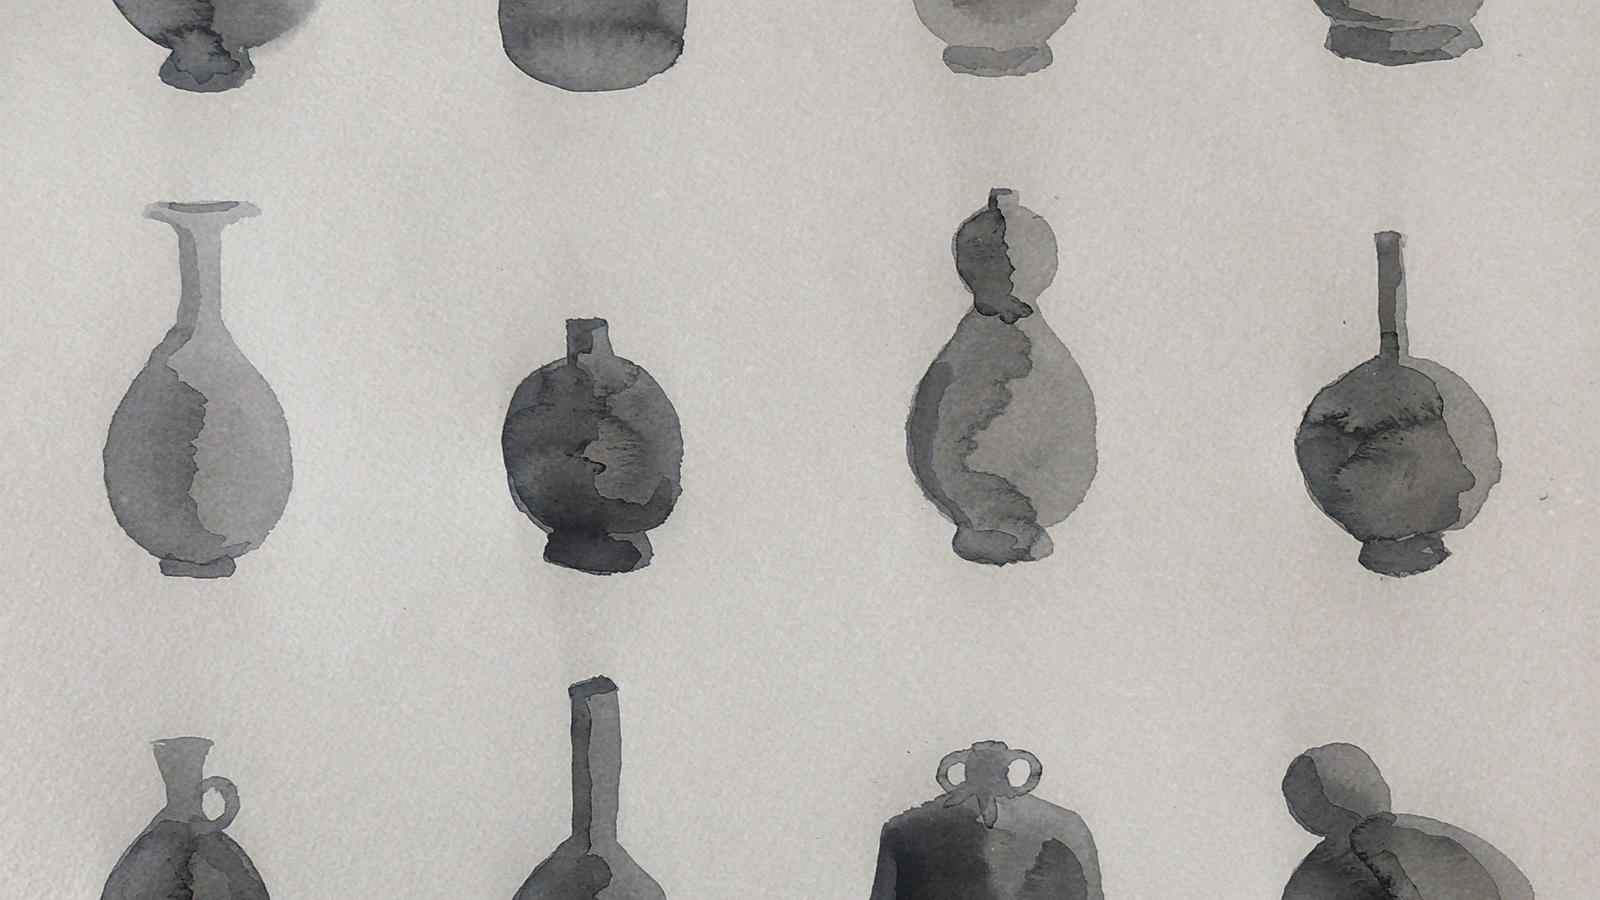 ink wash illustration of vases